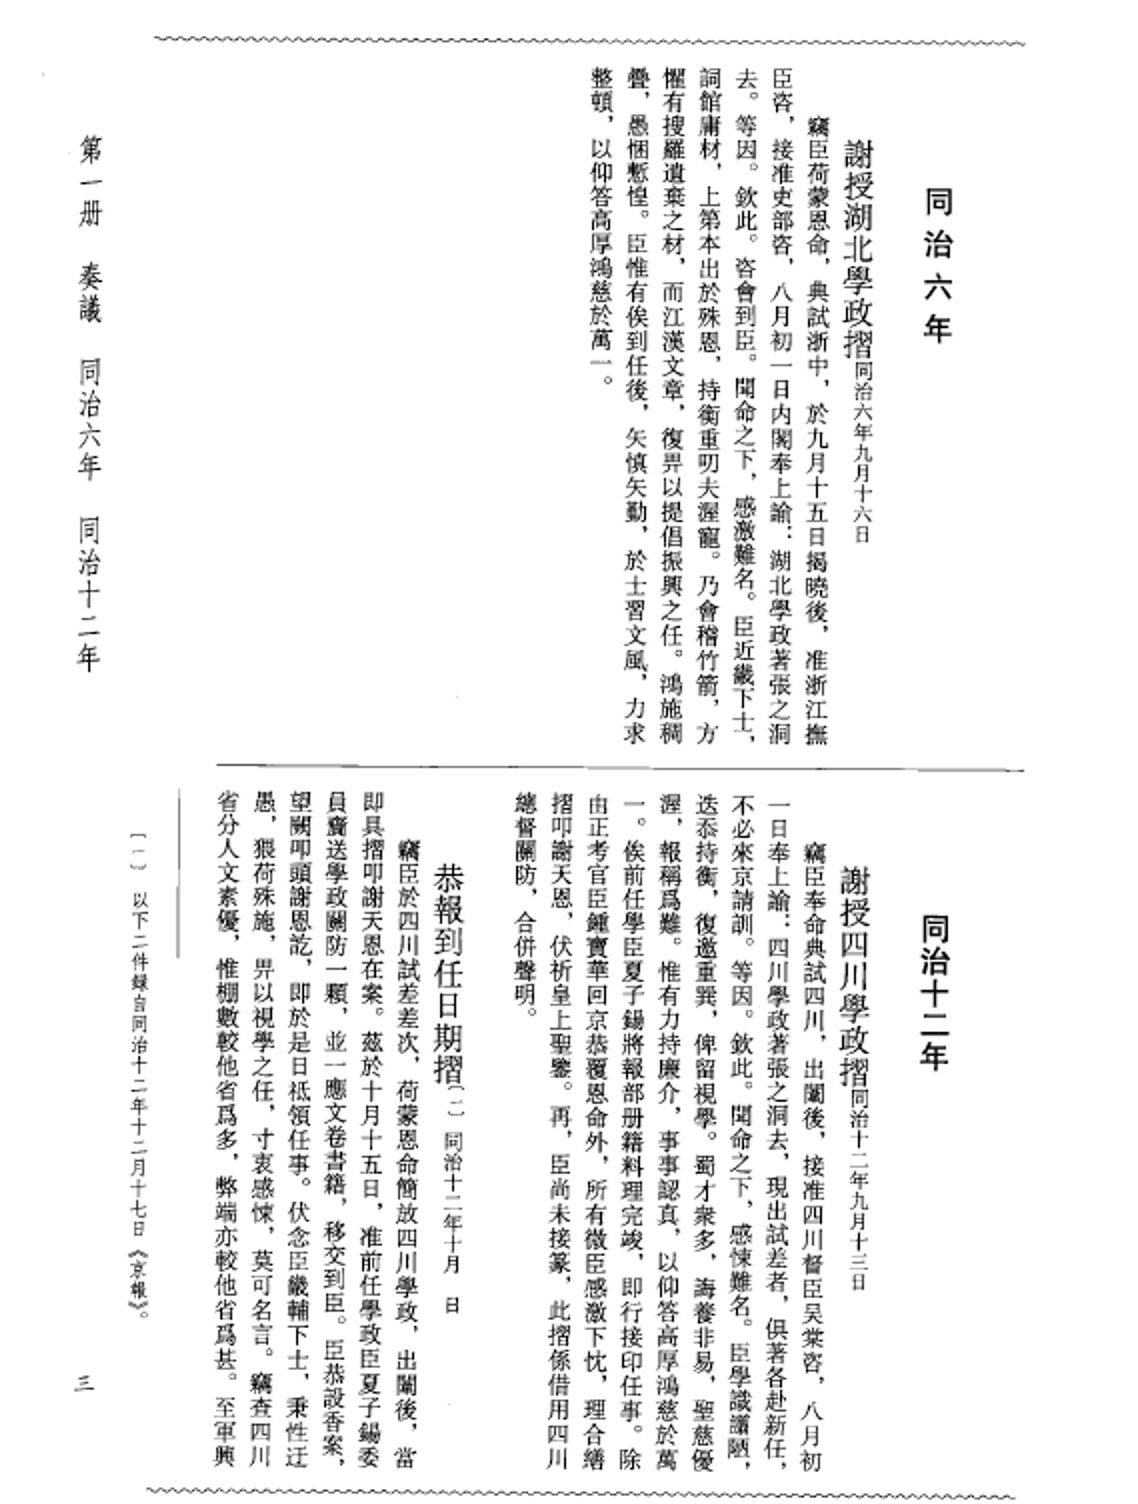 张之洞全集 全12册pdf下载 国家清史编纂委员会文献丛刊